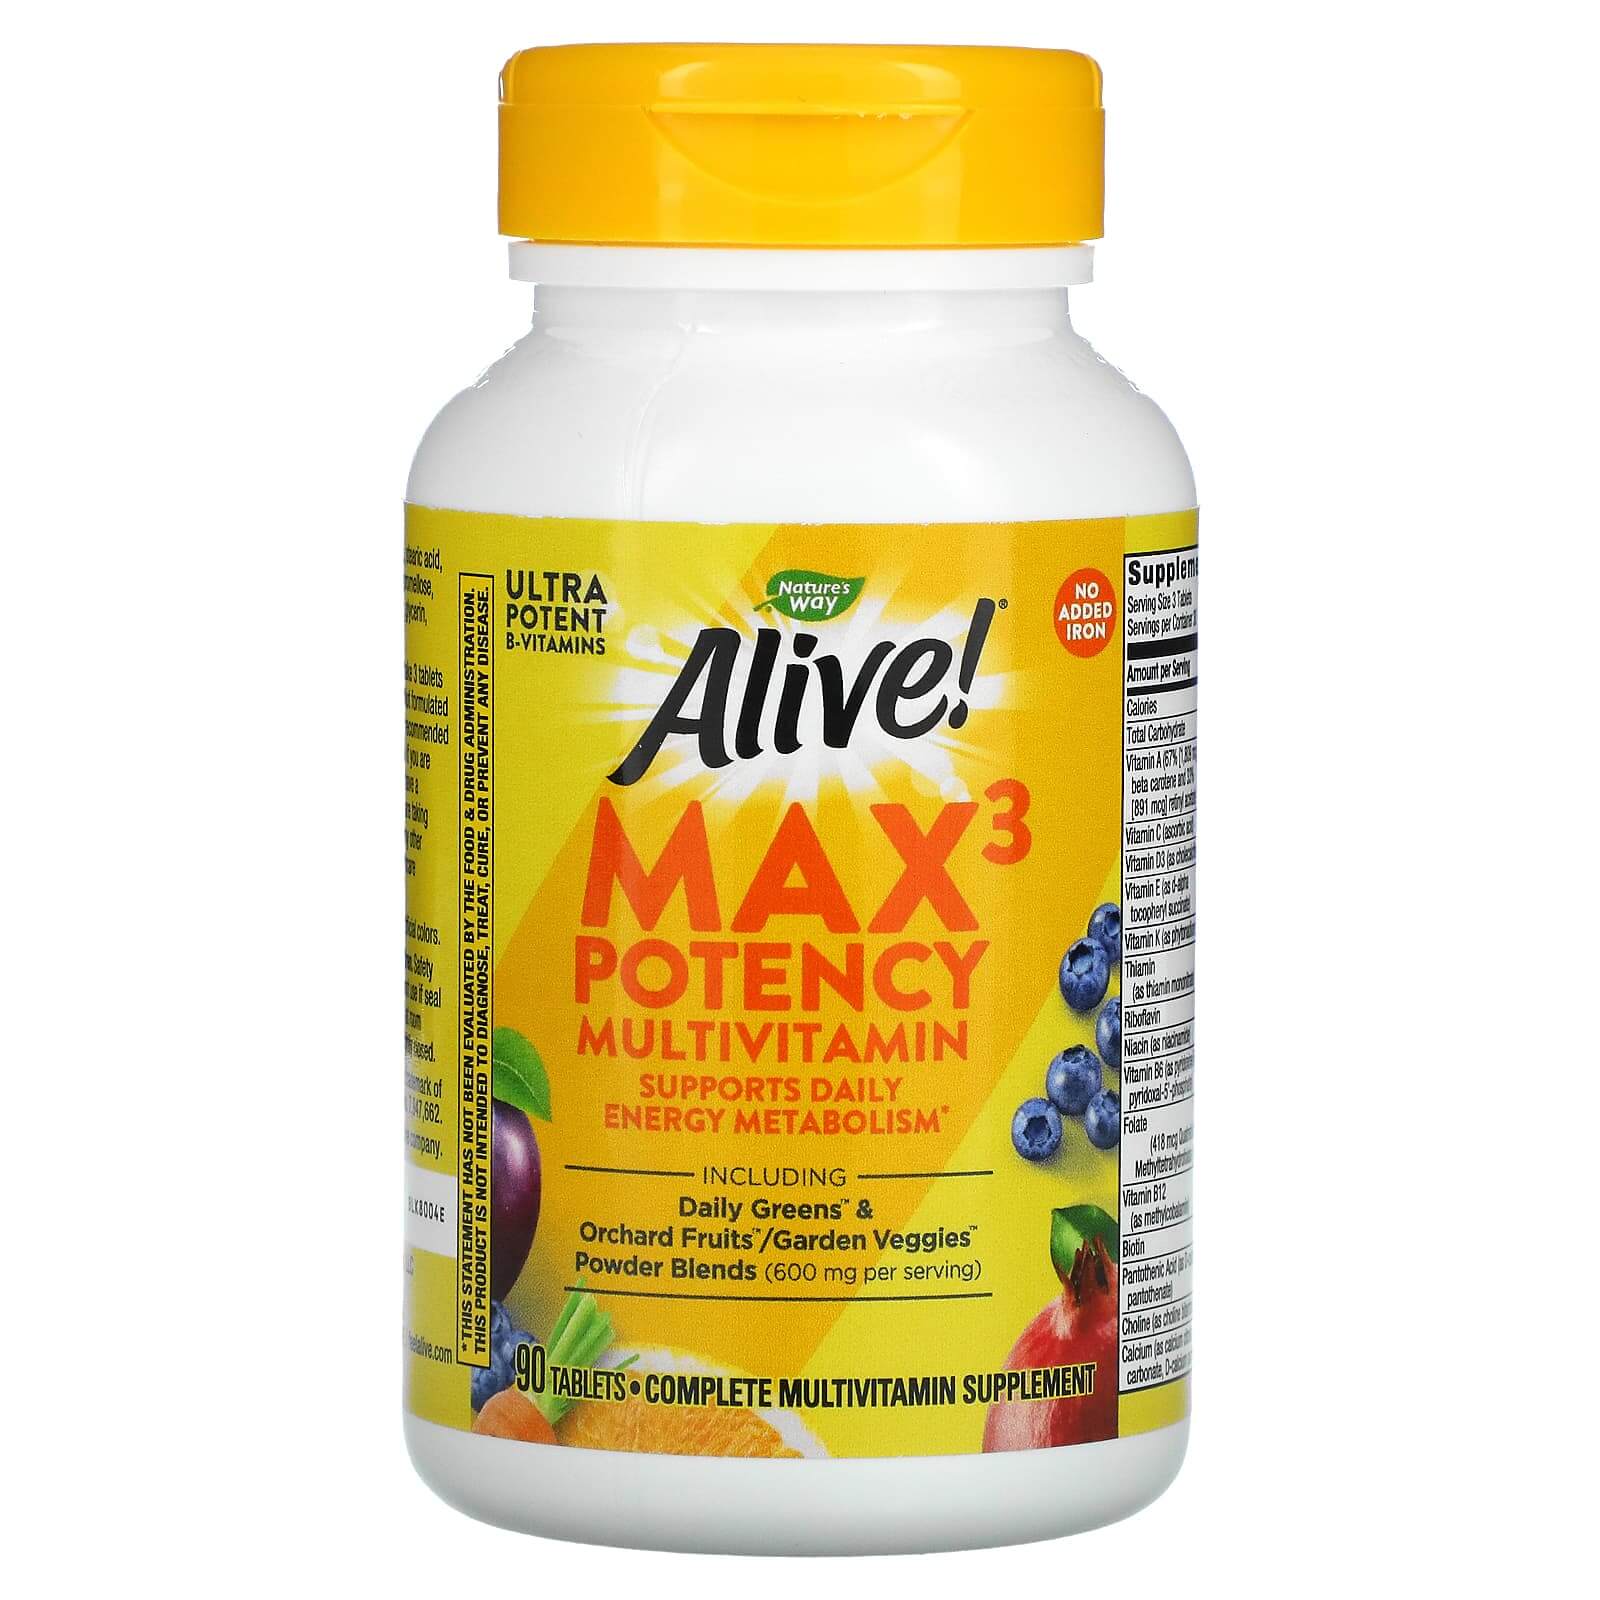 Мультивитамины Max3 Potency без добавления железа 90 таблеток, Nature's Way nature s way alive max3 potency мультивитамины повышенной эффективности без добавления железа 60 таблеток